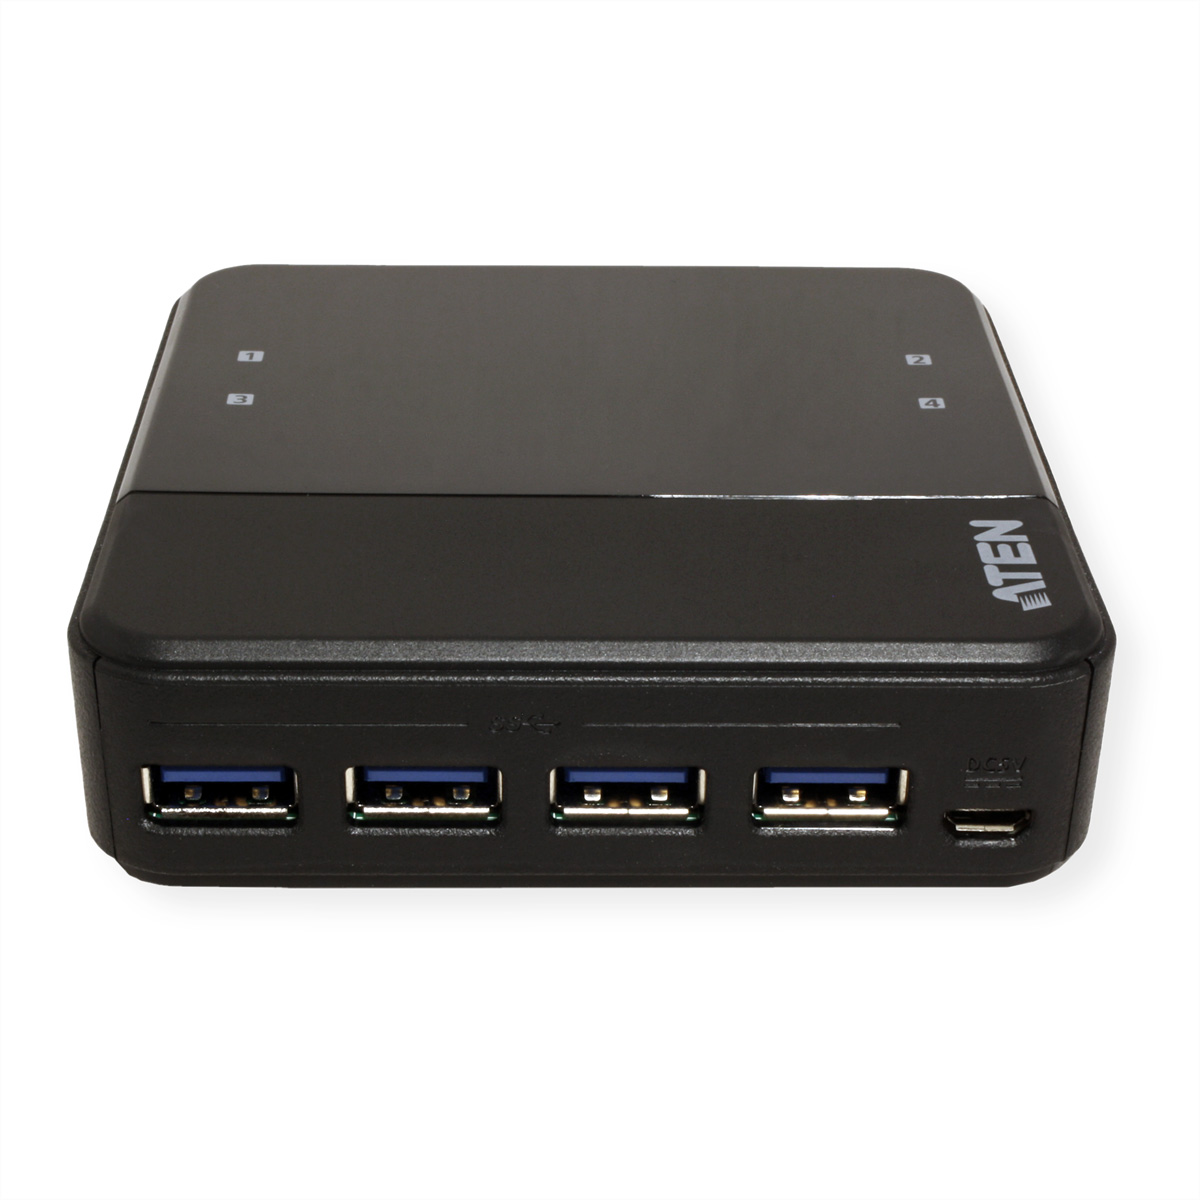 ATEN US3344 4-Port USB automatisch, USB-C schwarz Switchbox, zu Sharing